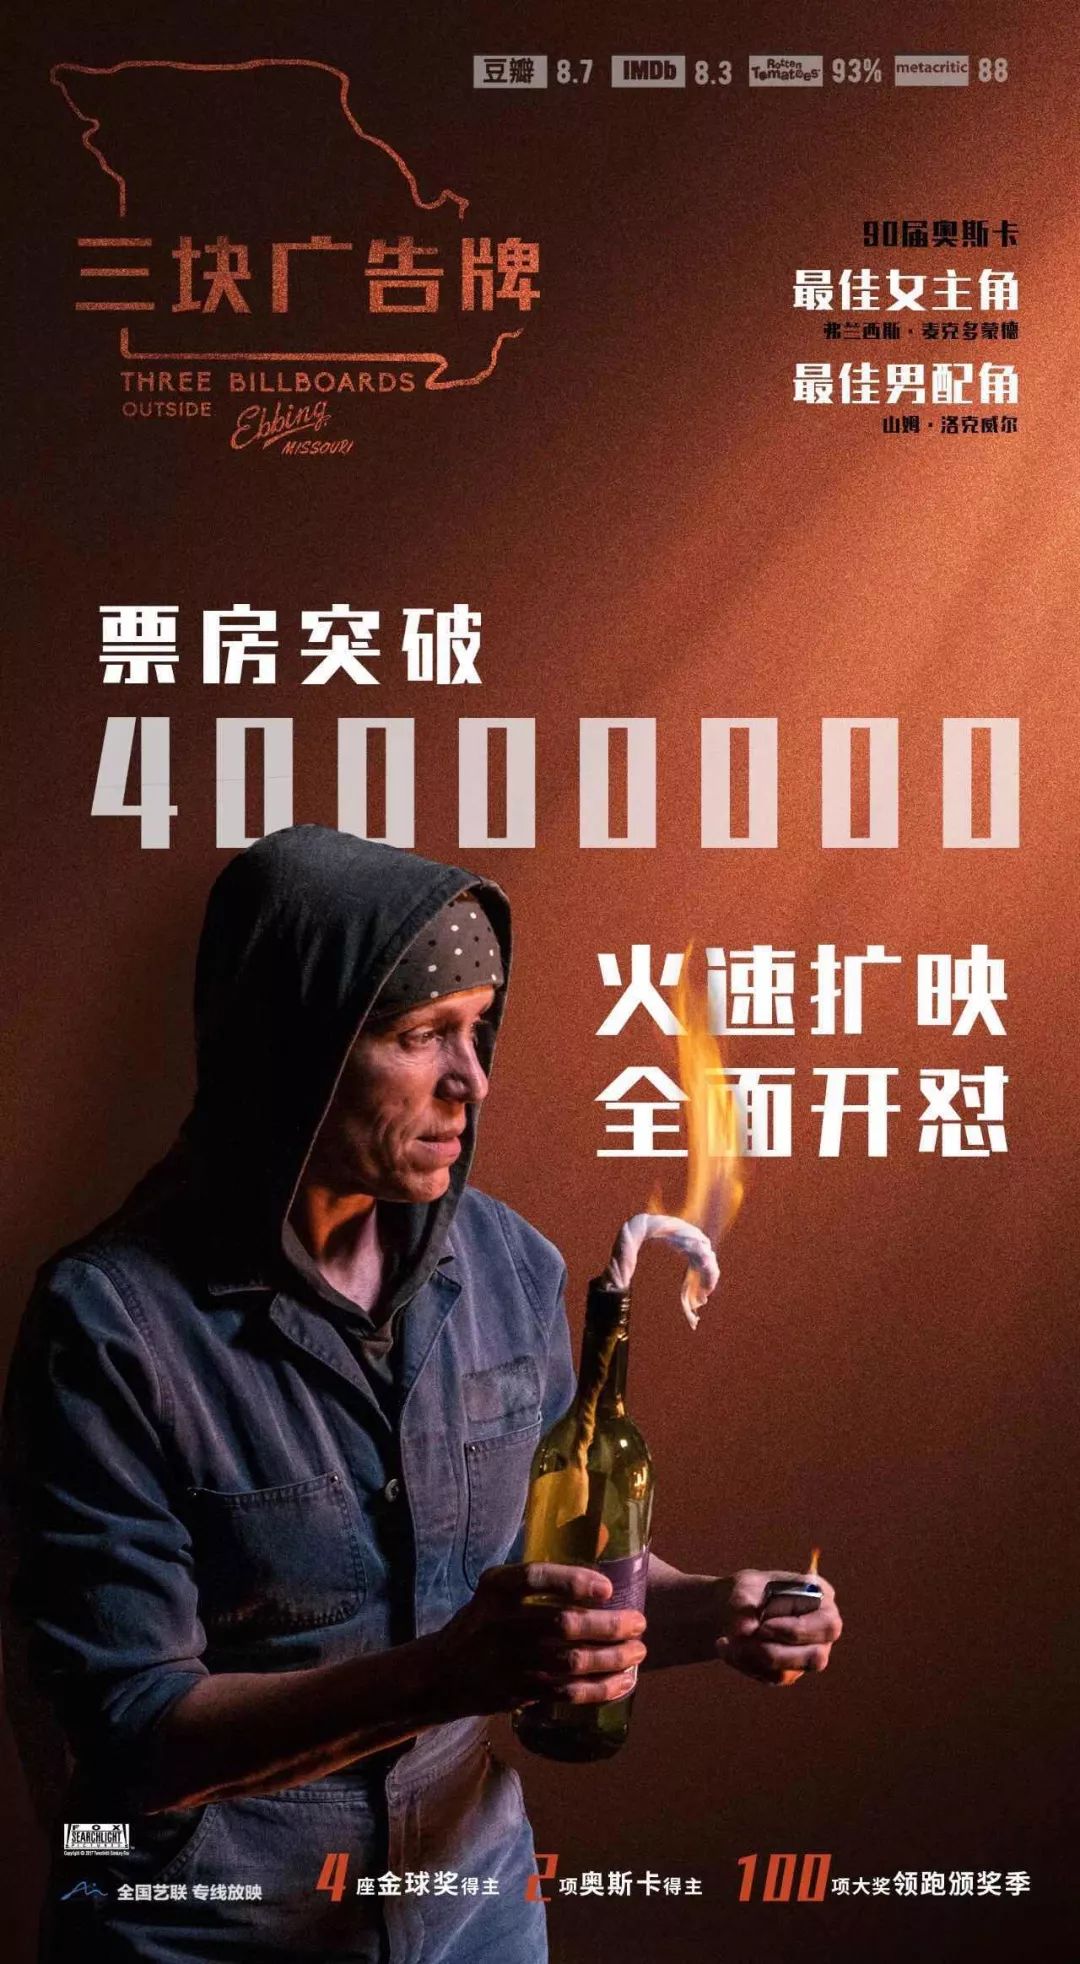 本文获授权转载 《三块广告牌》上海放映免费招募 全国艺术电影联盟